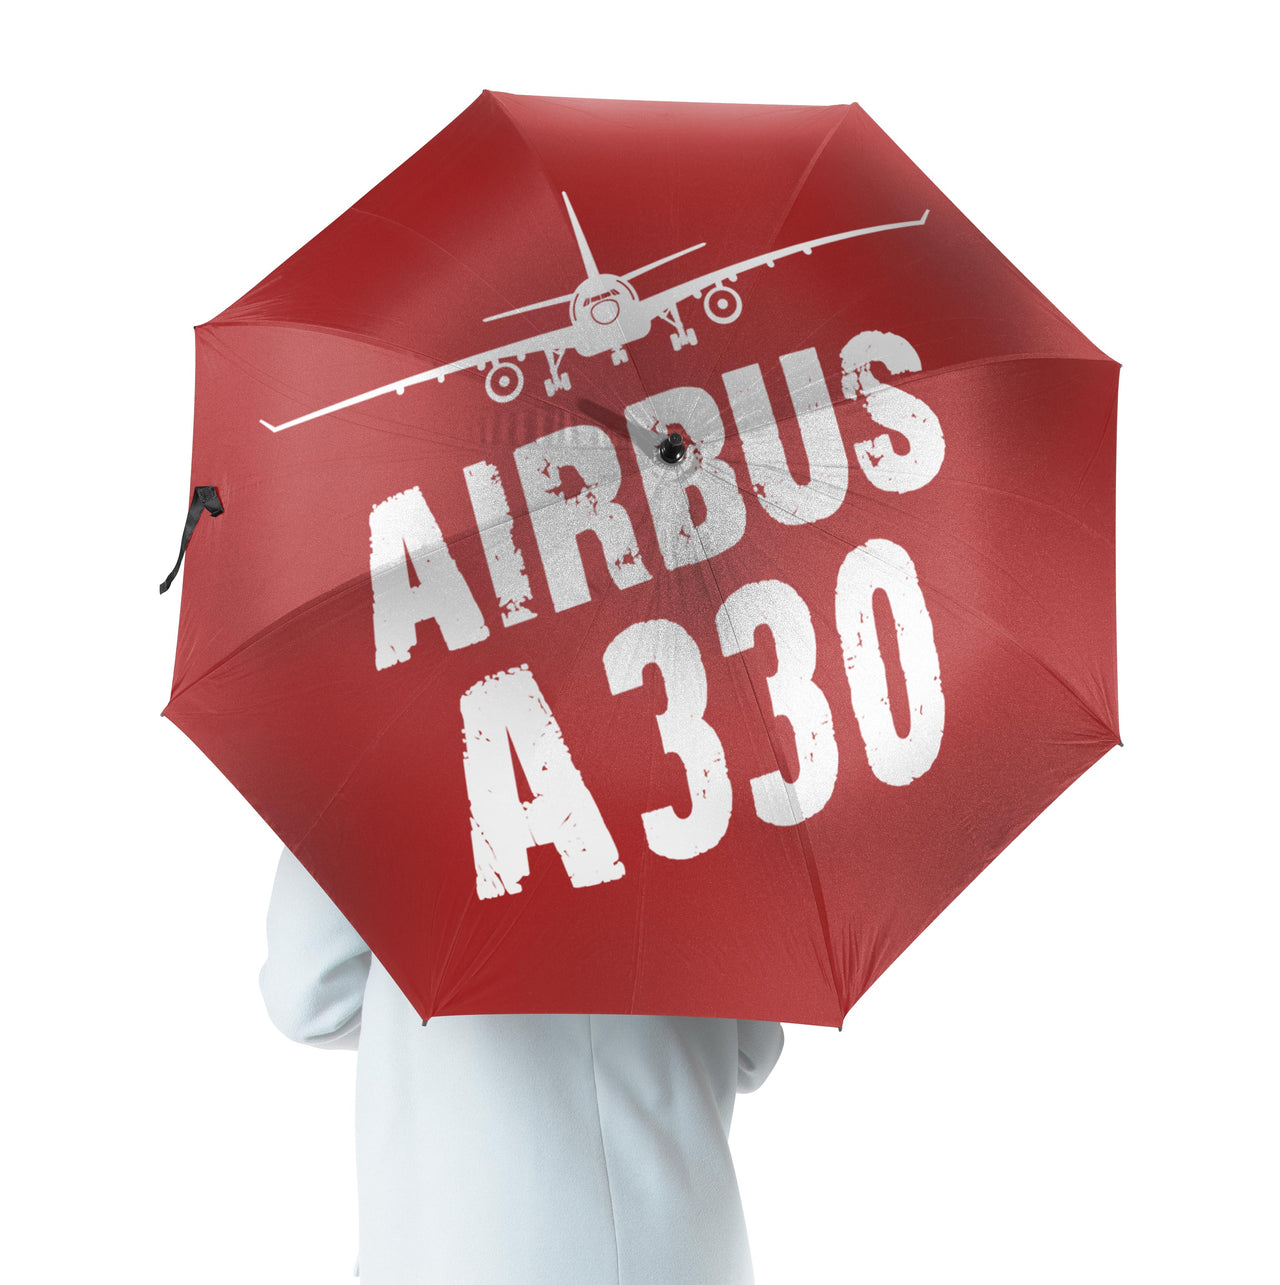 Airbus A330 & Plane Designed Umbrella